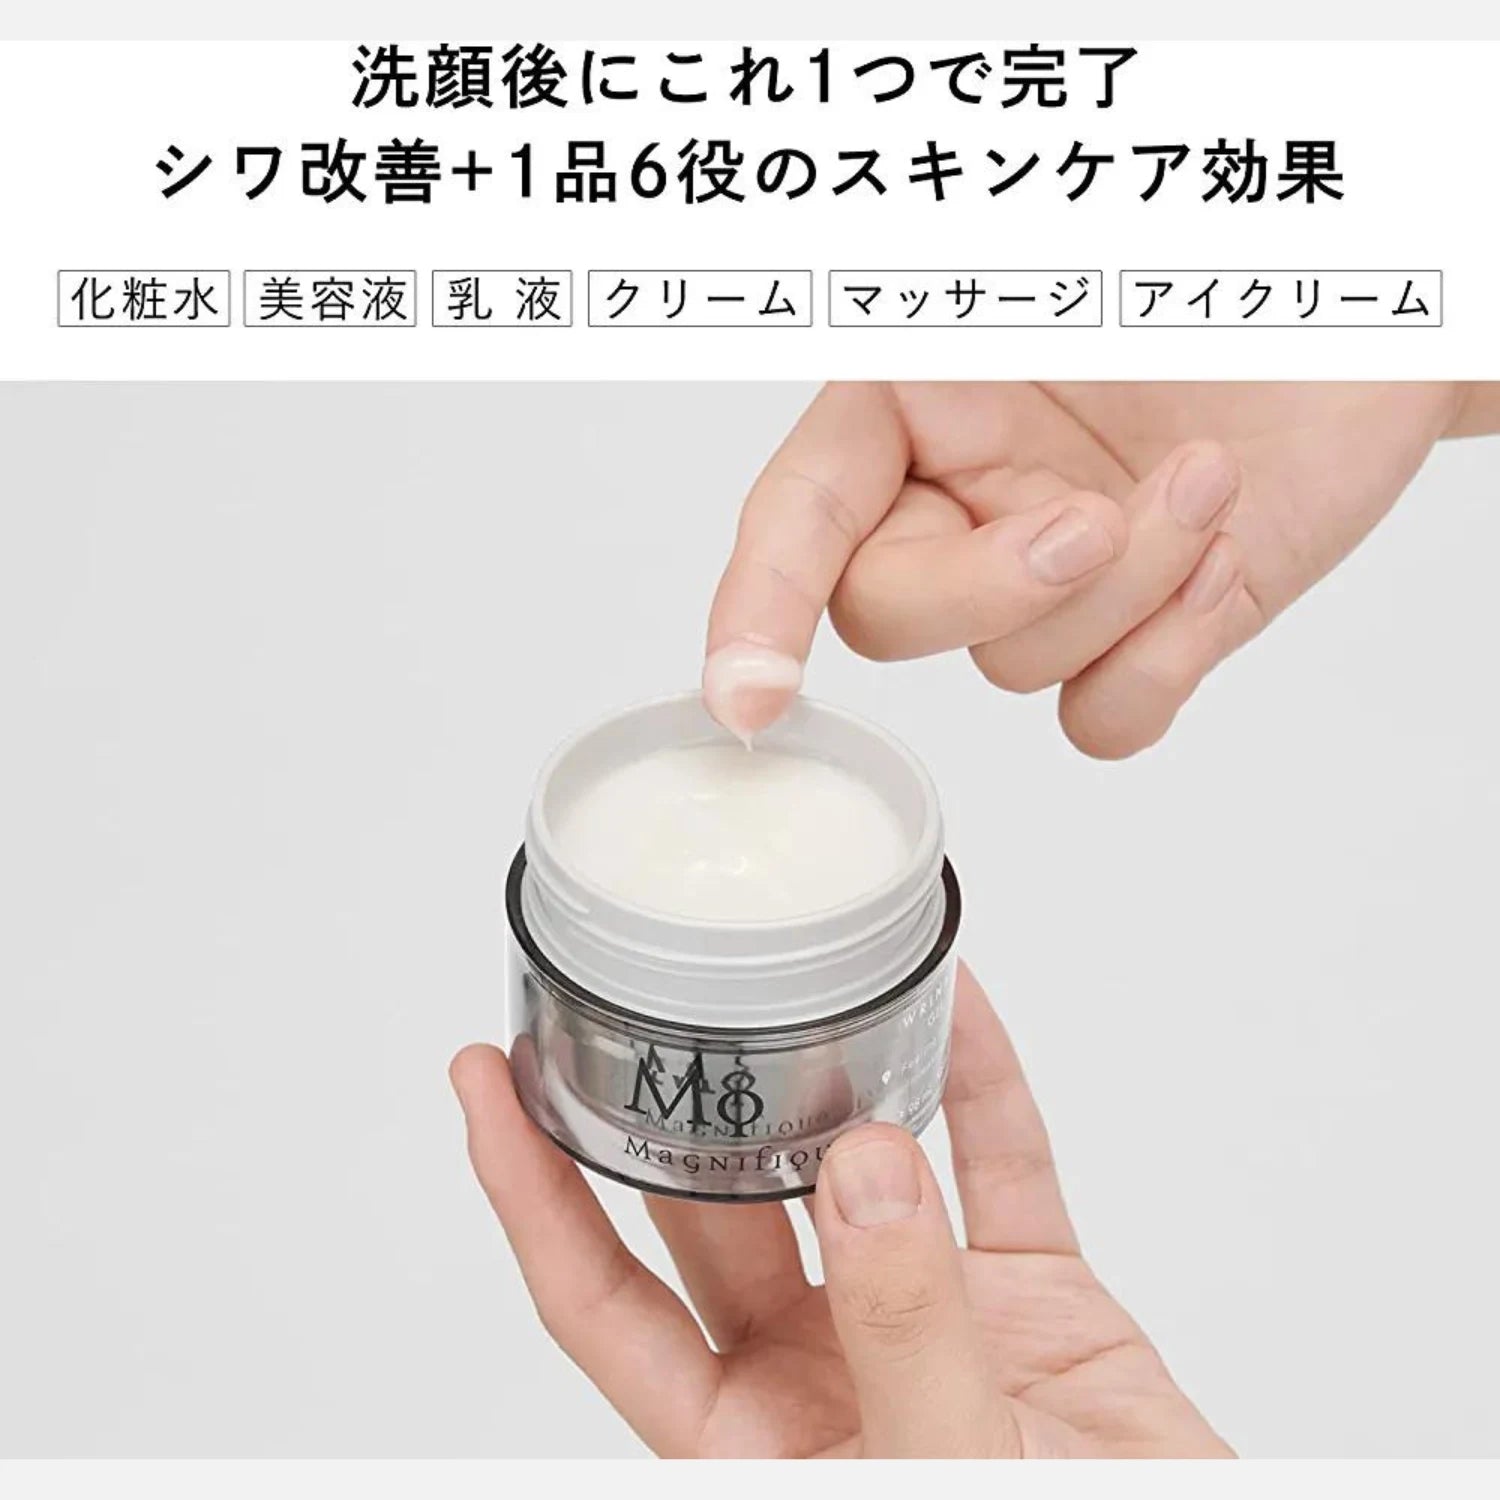 Kose Magnifique Wrinkle Lift Gel Cream For Men's 100g - Buy Me Japan